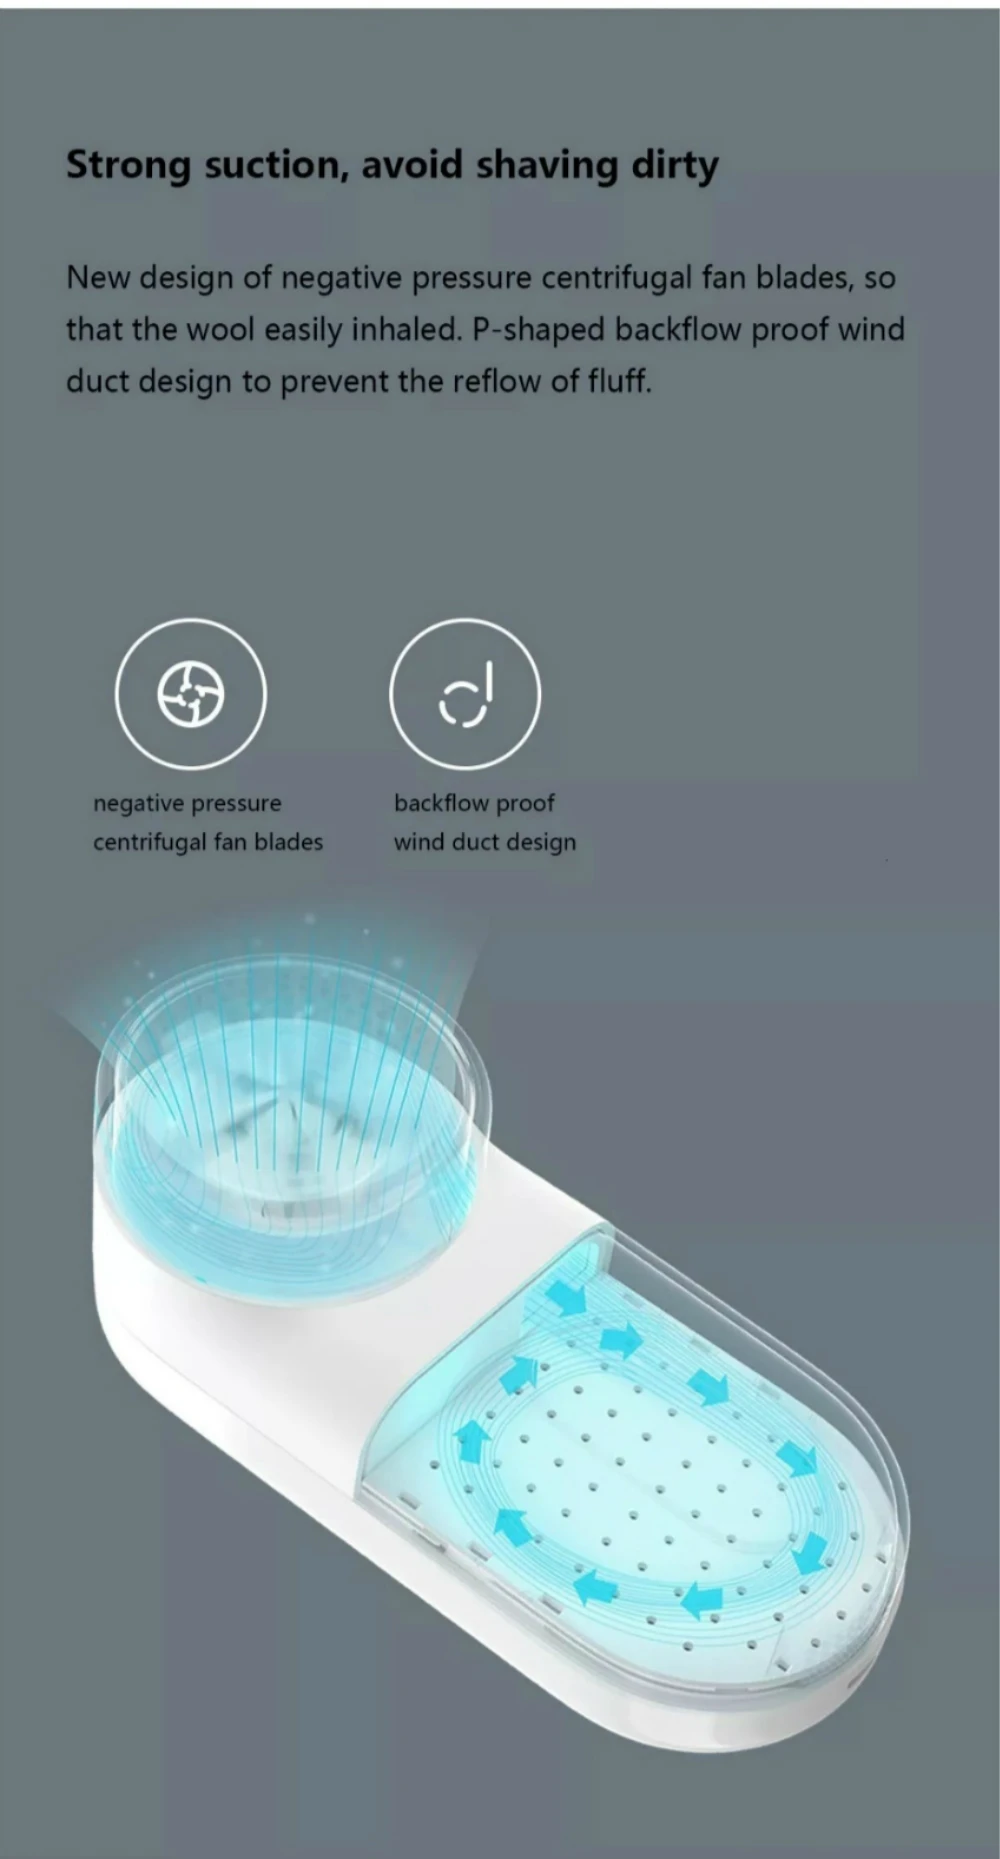 XIAOMI MIJIA портативная электрическая машинка для удаления катышков с одежды USB волосы мяч триммер fuzz ковры Бритва для свитера ворса гранул машина